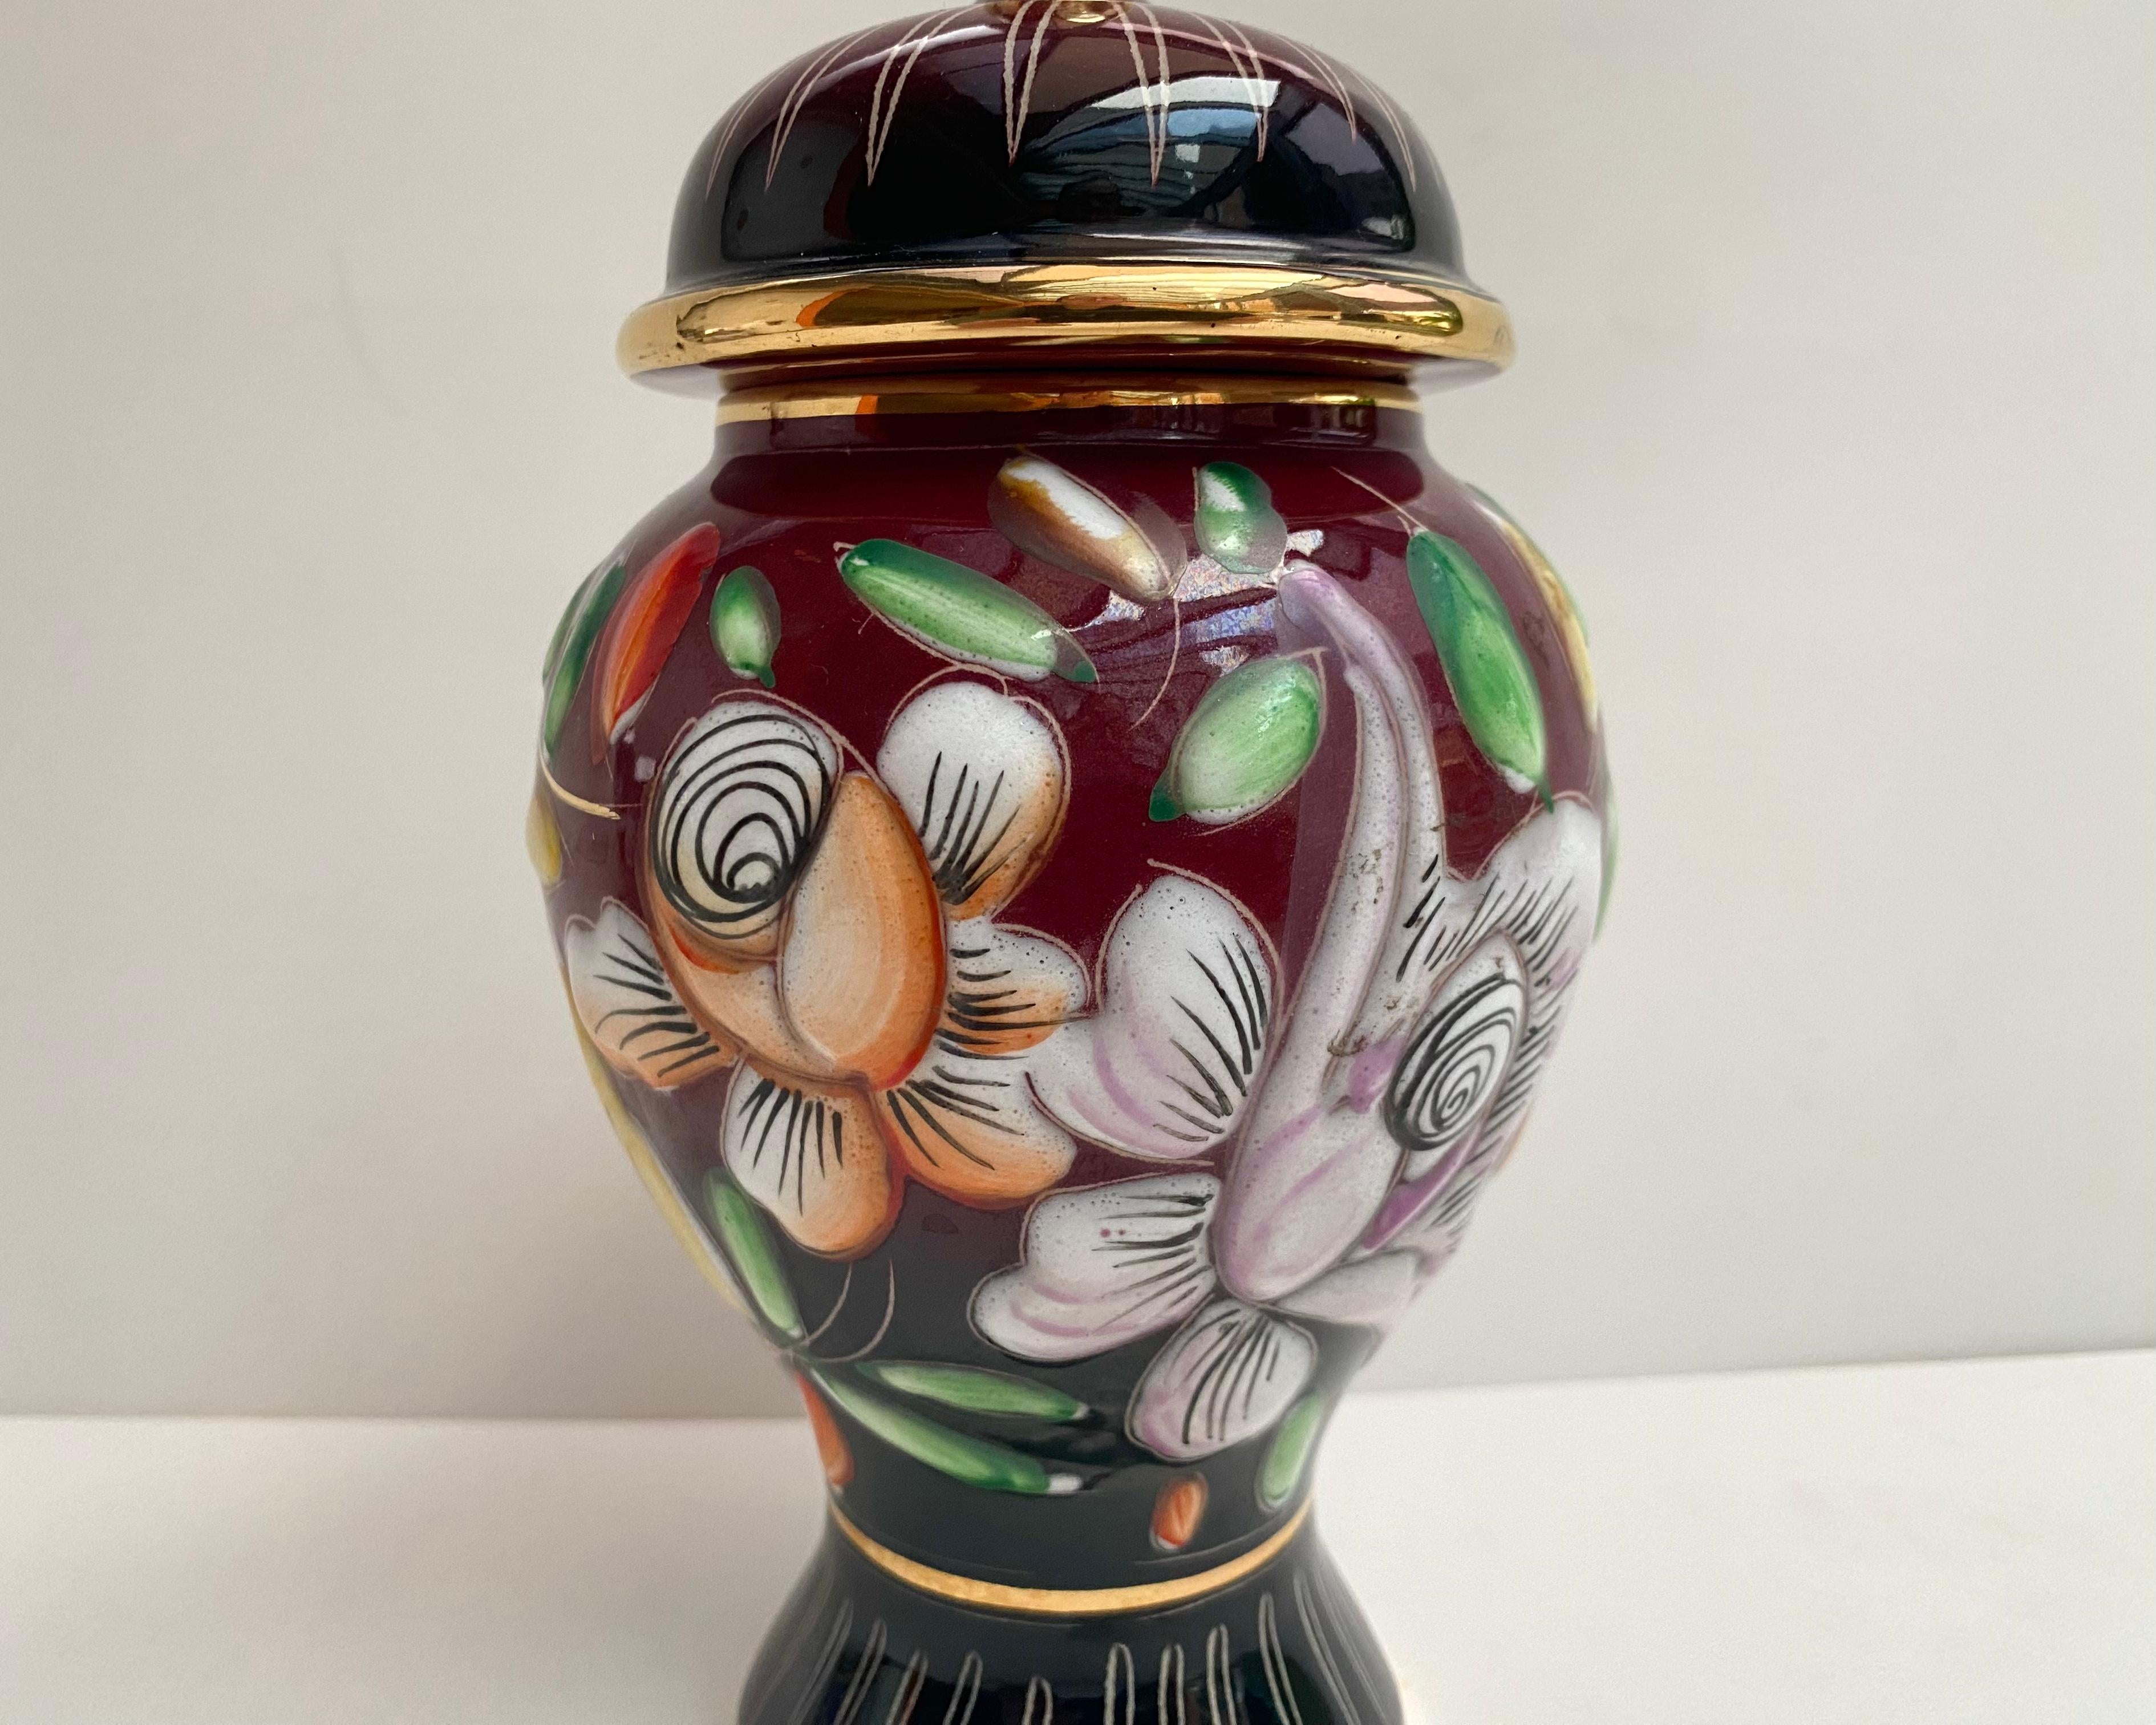 Seltene Vintage Vase/Urne mit Deckel aus den 1950er Jahren von Hubert Bequet aus Edelkeramik mit reiner 24k Goldverarbeitung.

Aus den 1950er Jahren. Hergestellt in Belgien.

Sie wurde von Meisterhand gefertigt und weist eine florale Dekoration auf